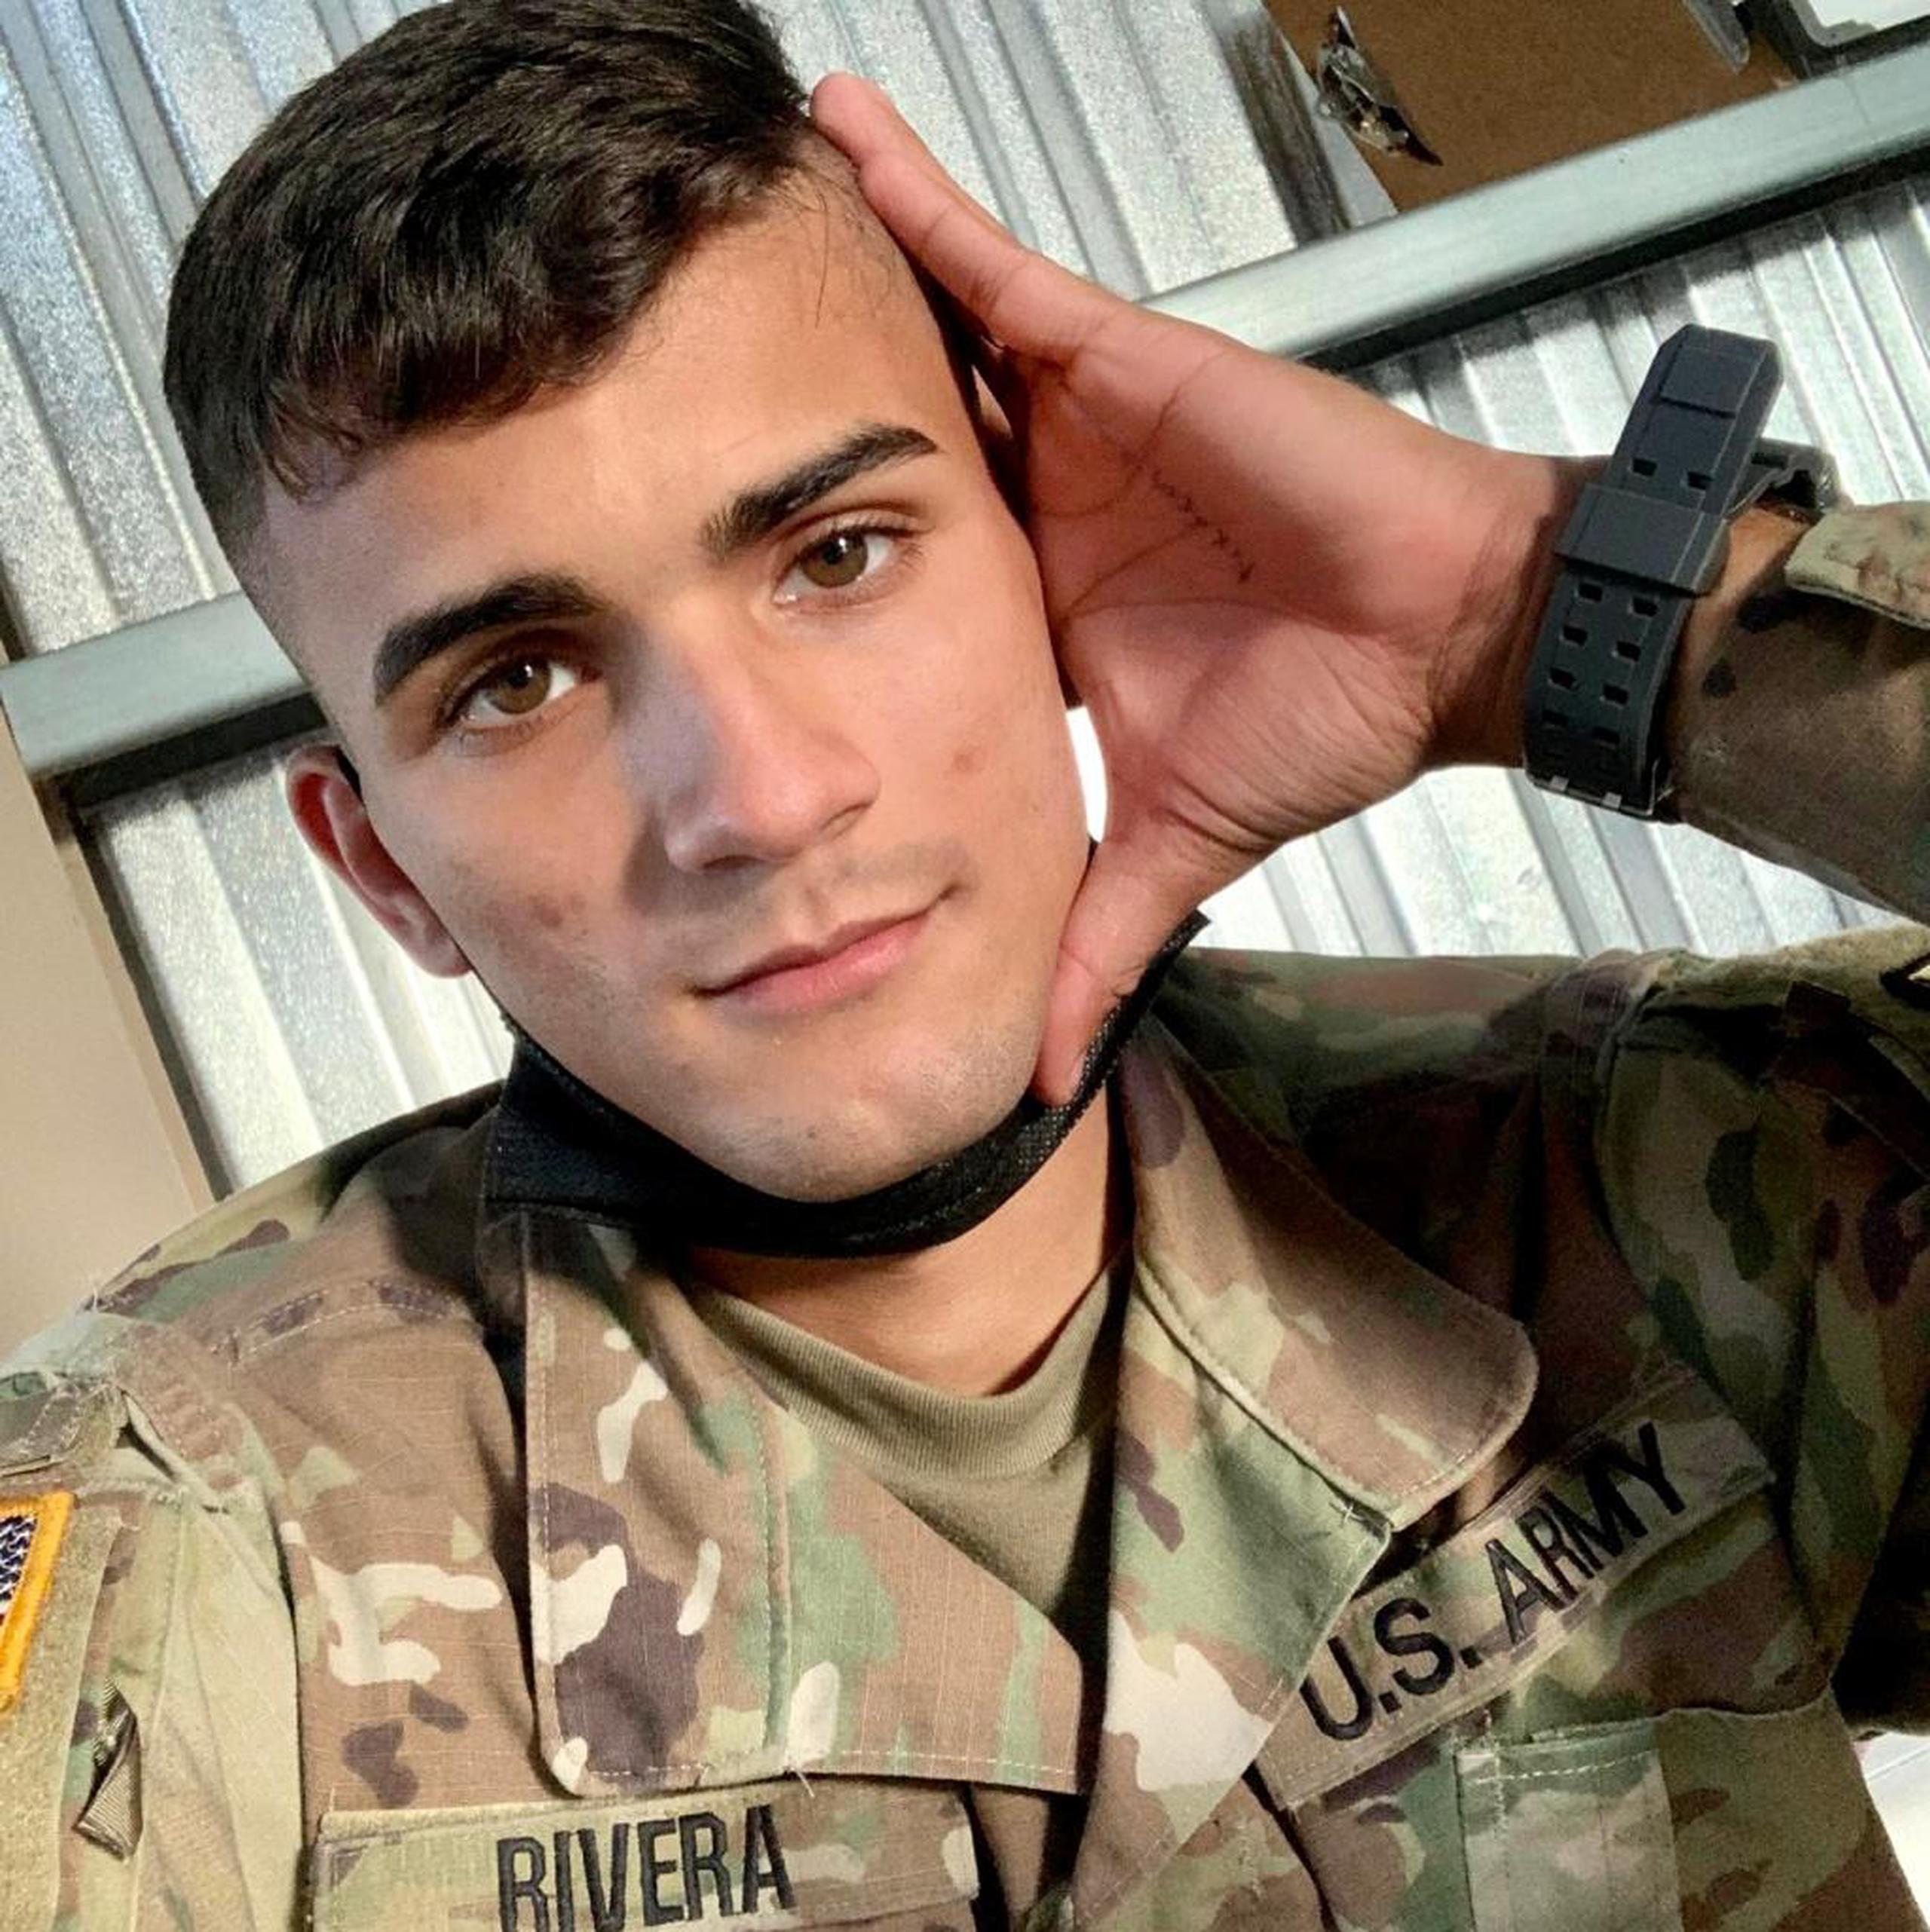 El teniente de la Reserva del Ejército Jeancarlo Rivera Lugo de 23 años, fue asesinado en el barrio El Tuque en Ponce durante un presunto altercado de tránsito.